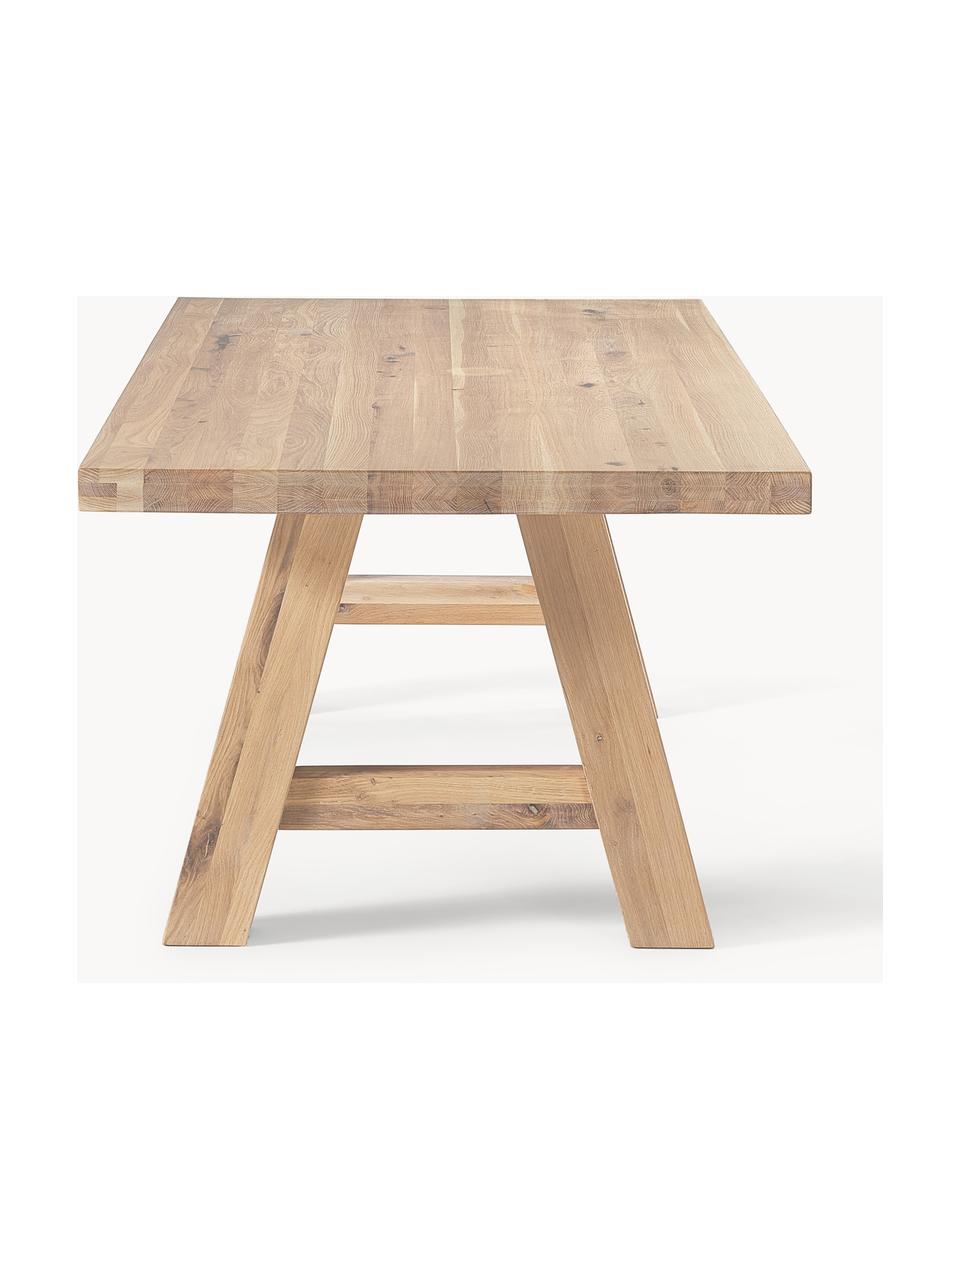 Table en bois de chêne Ashton, tailles variées, Chêne massif, légèrement huilé 
100% bois FSC issu d'une sylviculture durable, Bois de chêne clair huilé, larg. 220 x prof. 100 cm